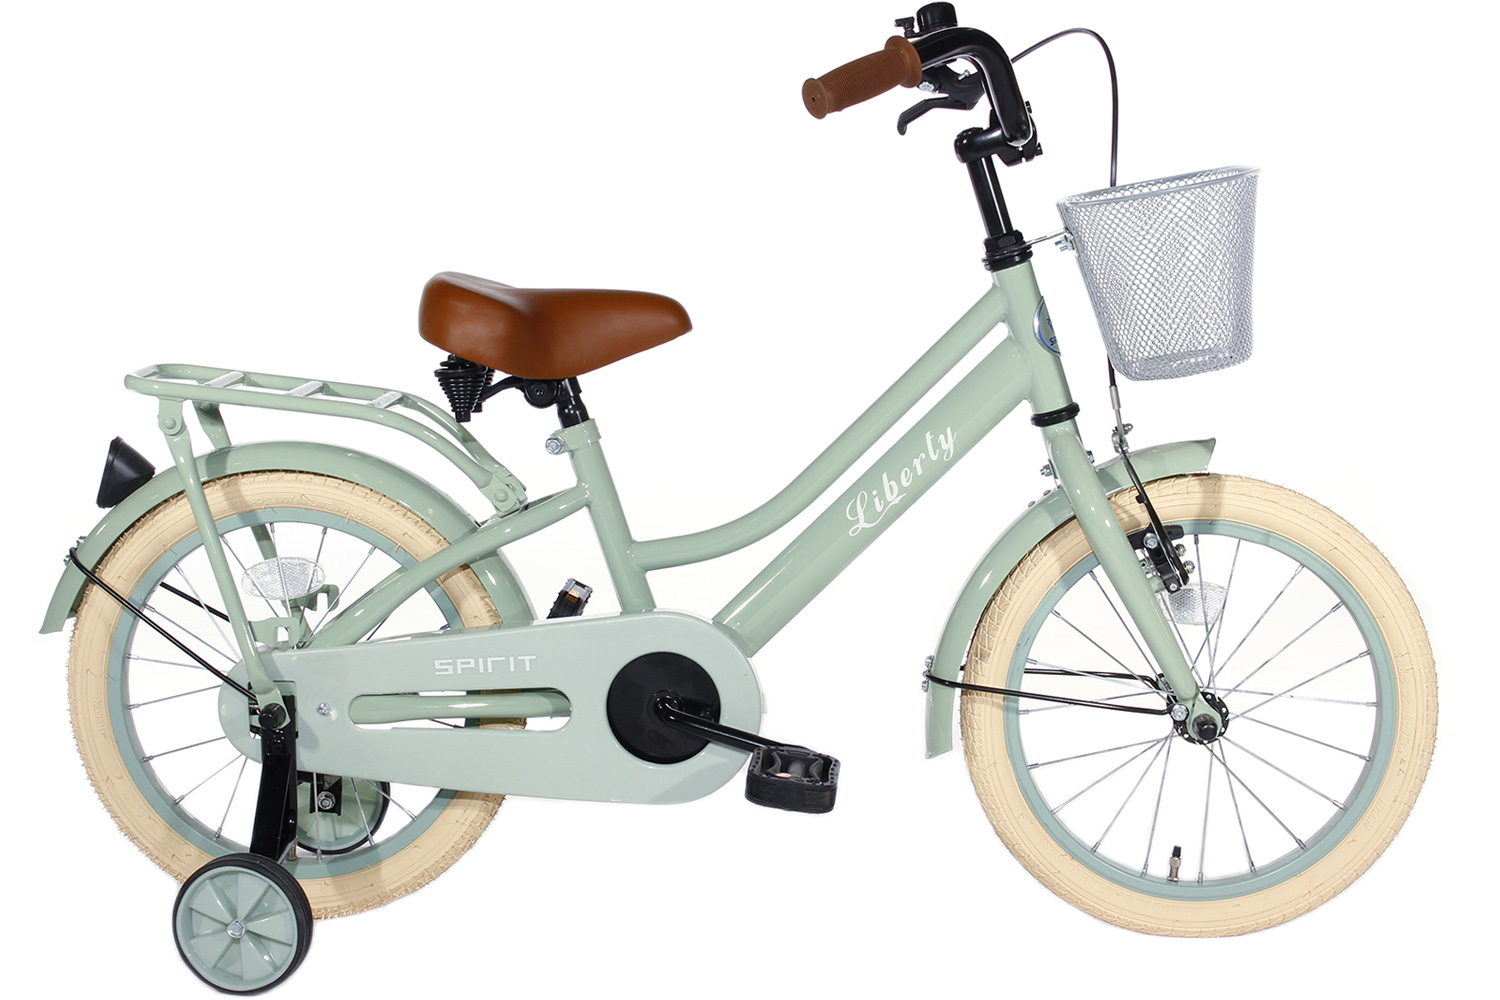 rijk Vervallen Opblazen Spirit Liberty Meisjesfiets Groen 16 Inch + Mand | City-Bikes.nl